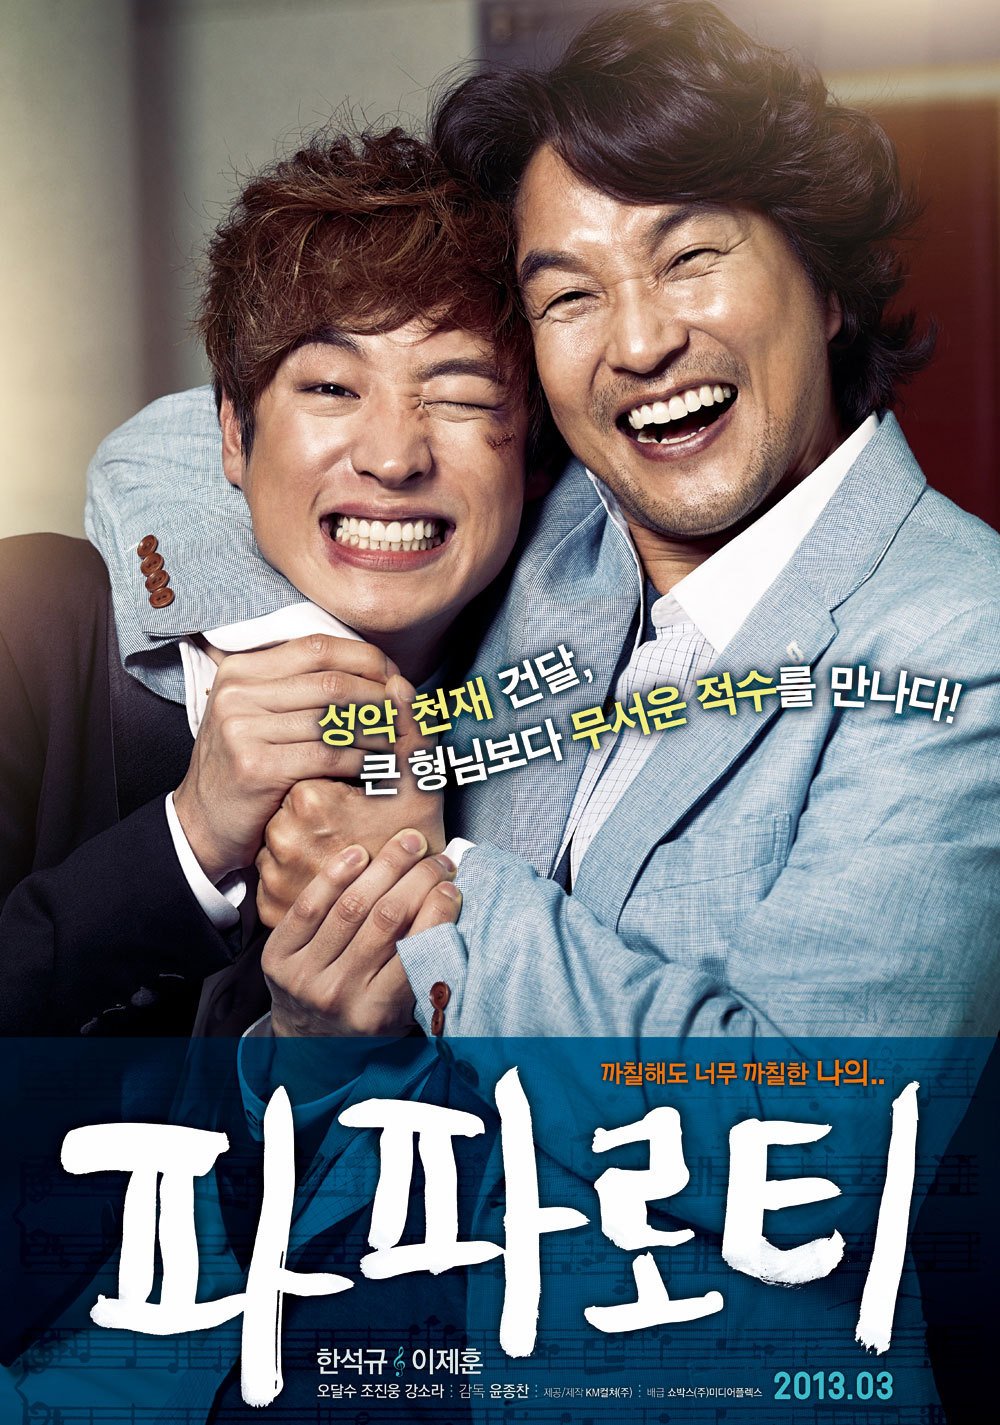 harper bazaar phim cua lee je hoon 3 - 12 bộ phim xuất sắc nhất của diễn viên Lee Je Hoon